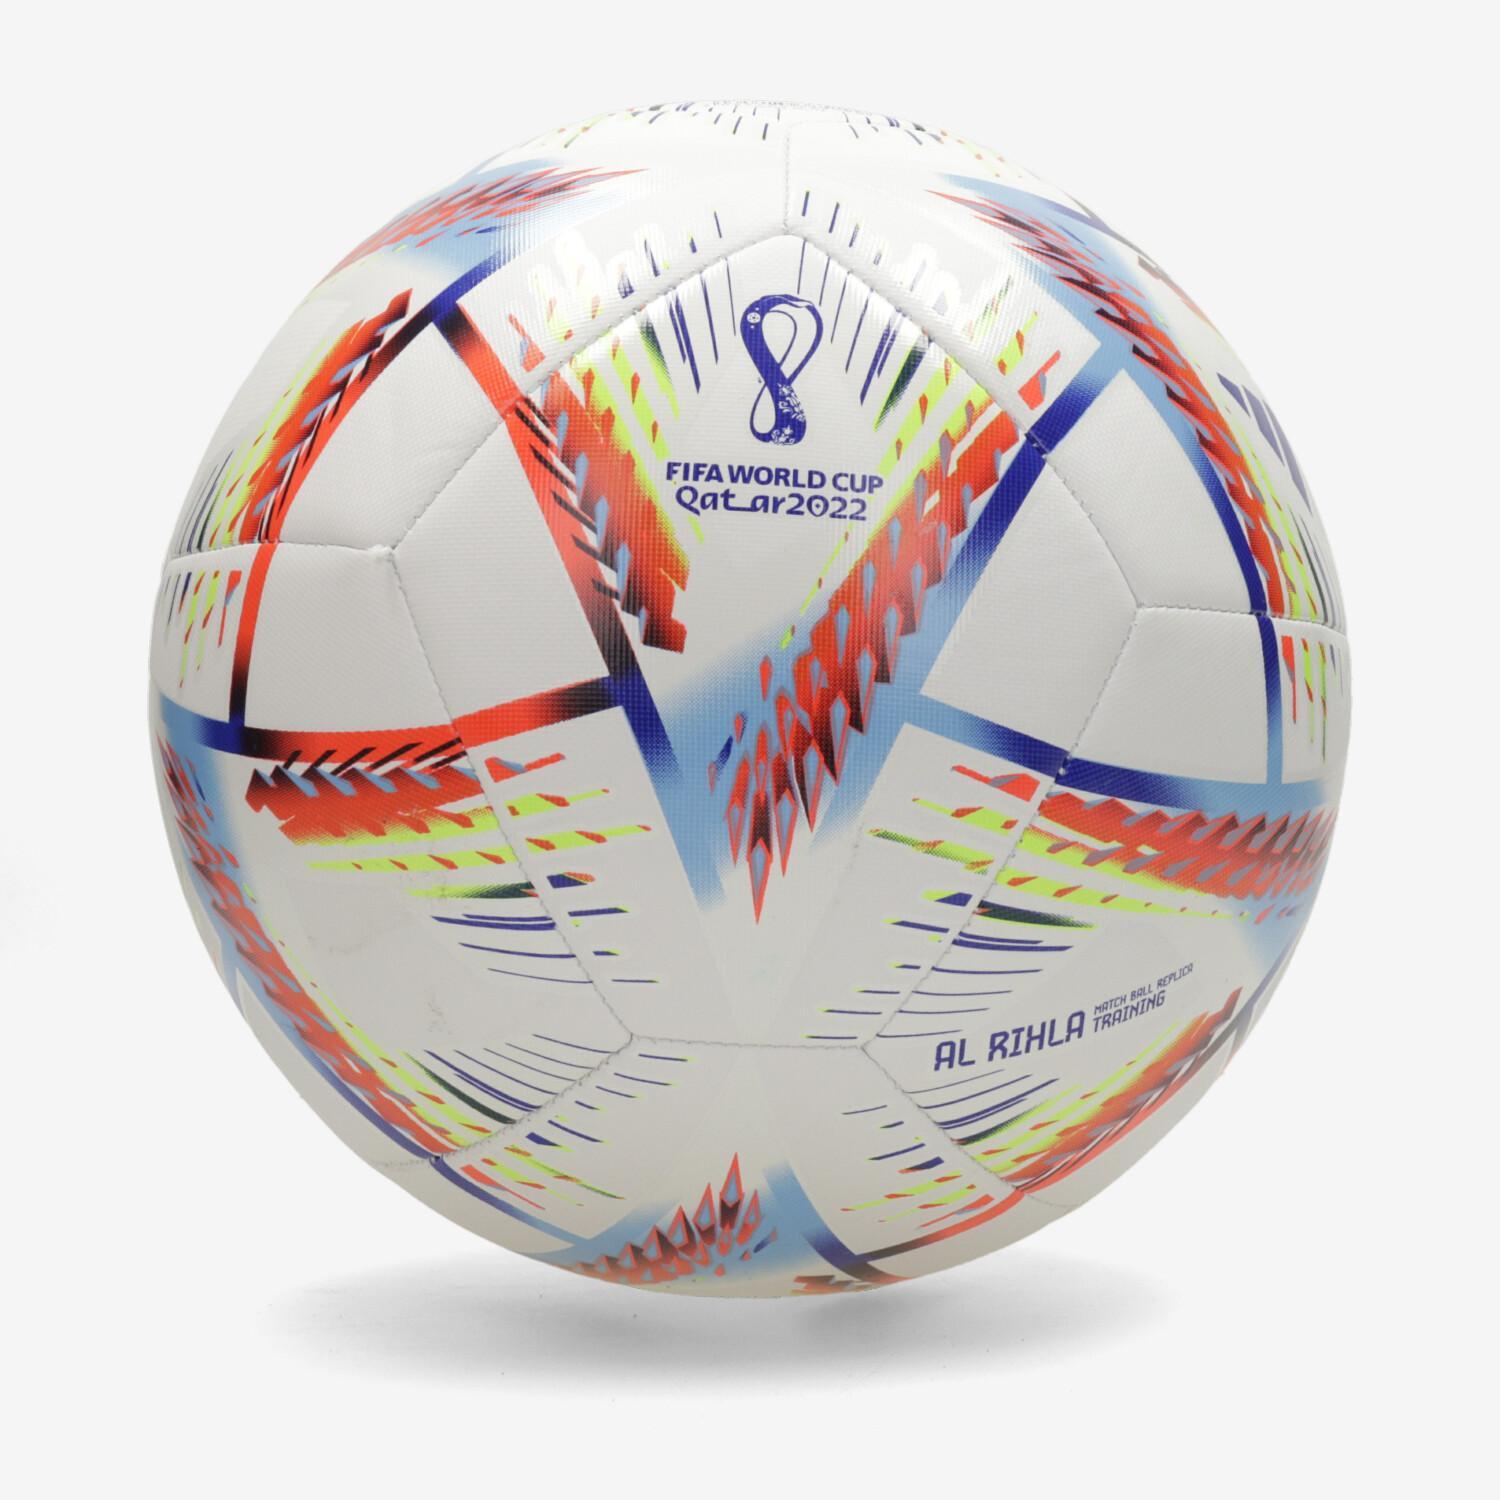 Ballon Coupe du Monde 2022 Qatar 'Al Rihla' - Blanc - Ballon Football sports taille 5